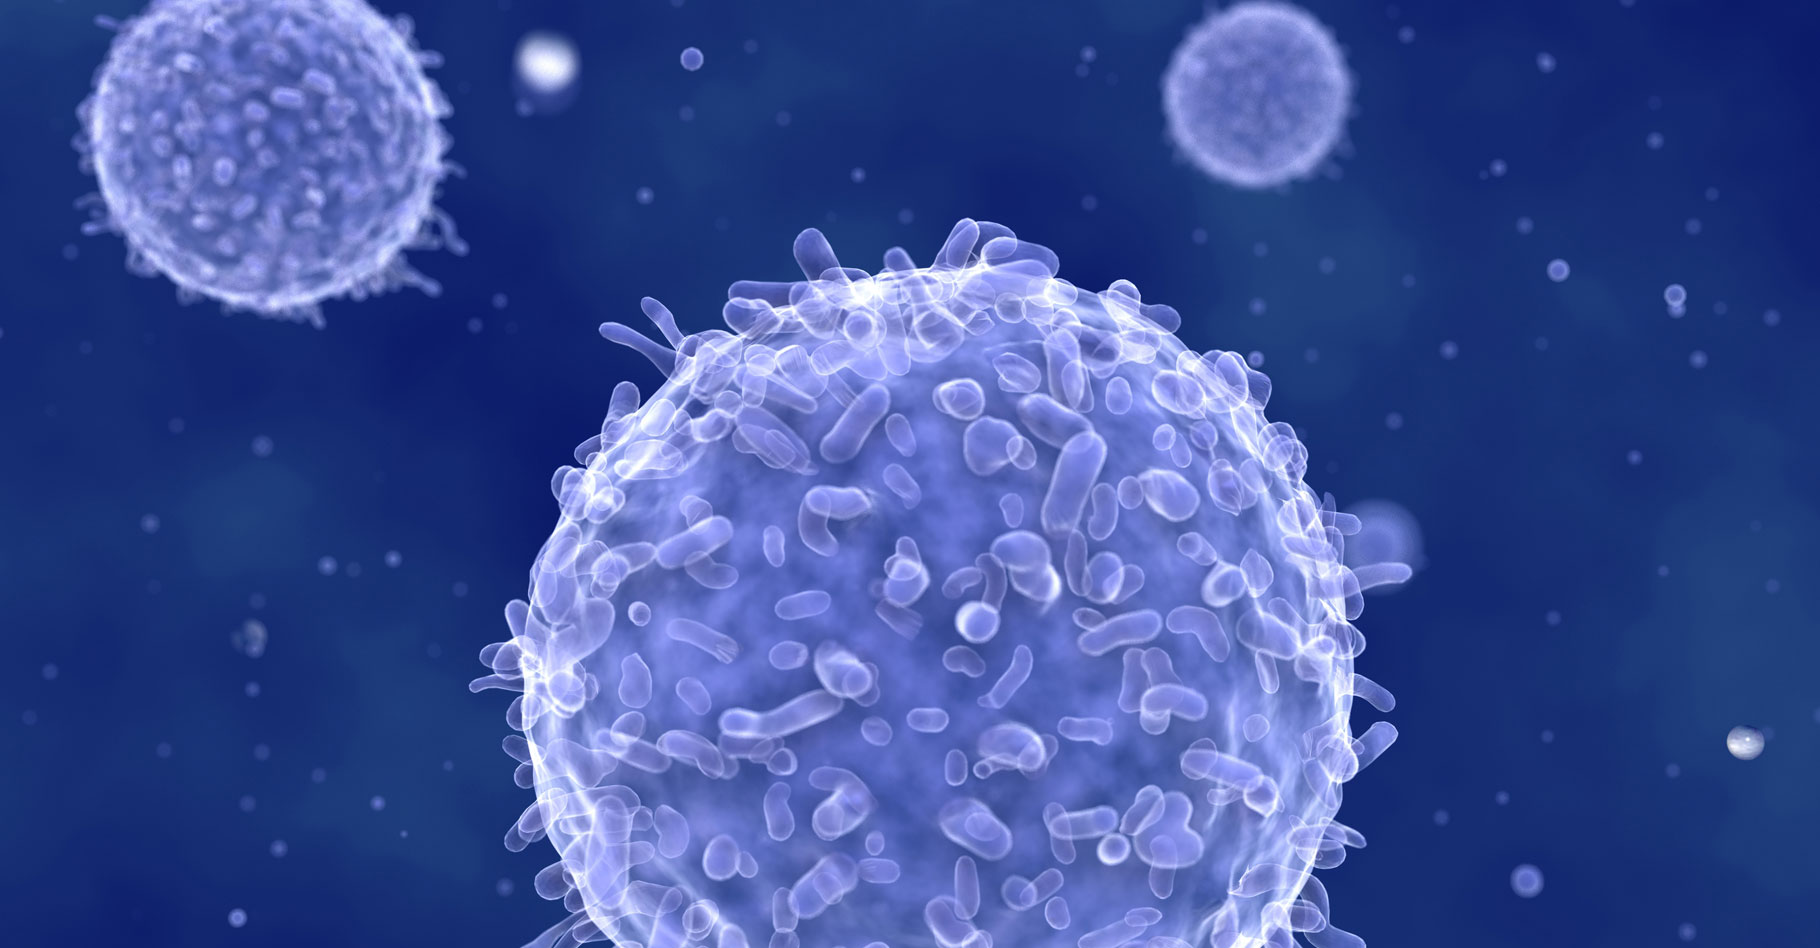 Les lymphocytes, cellules effectrices de la réaction immunitaire